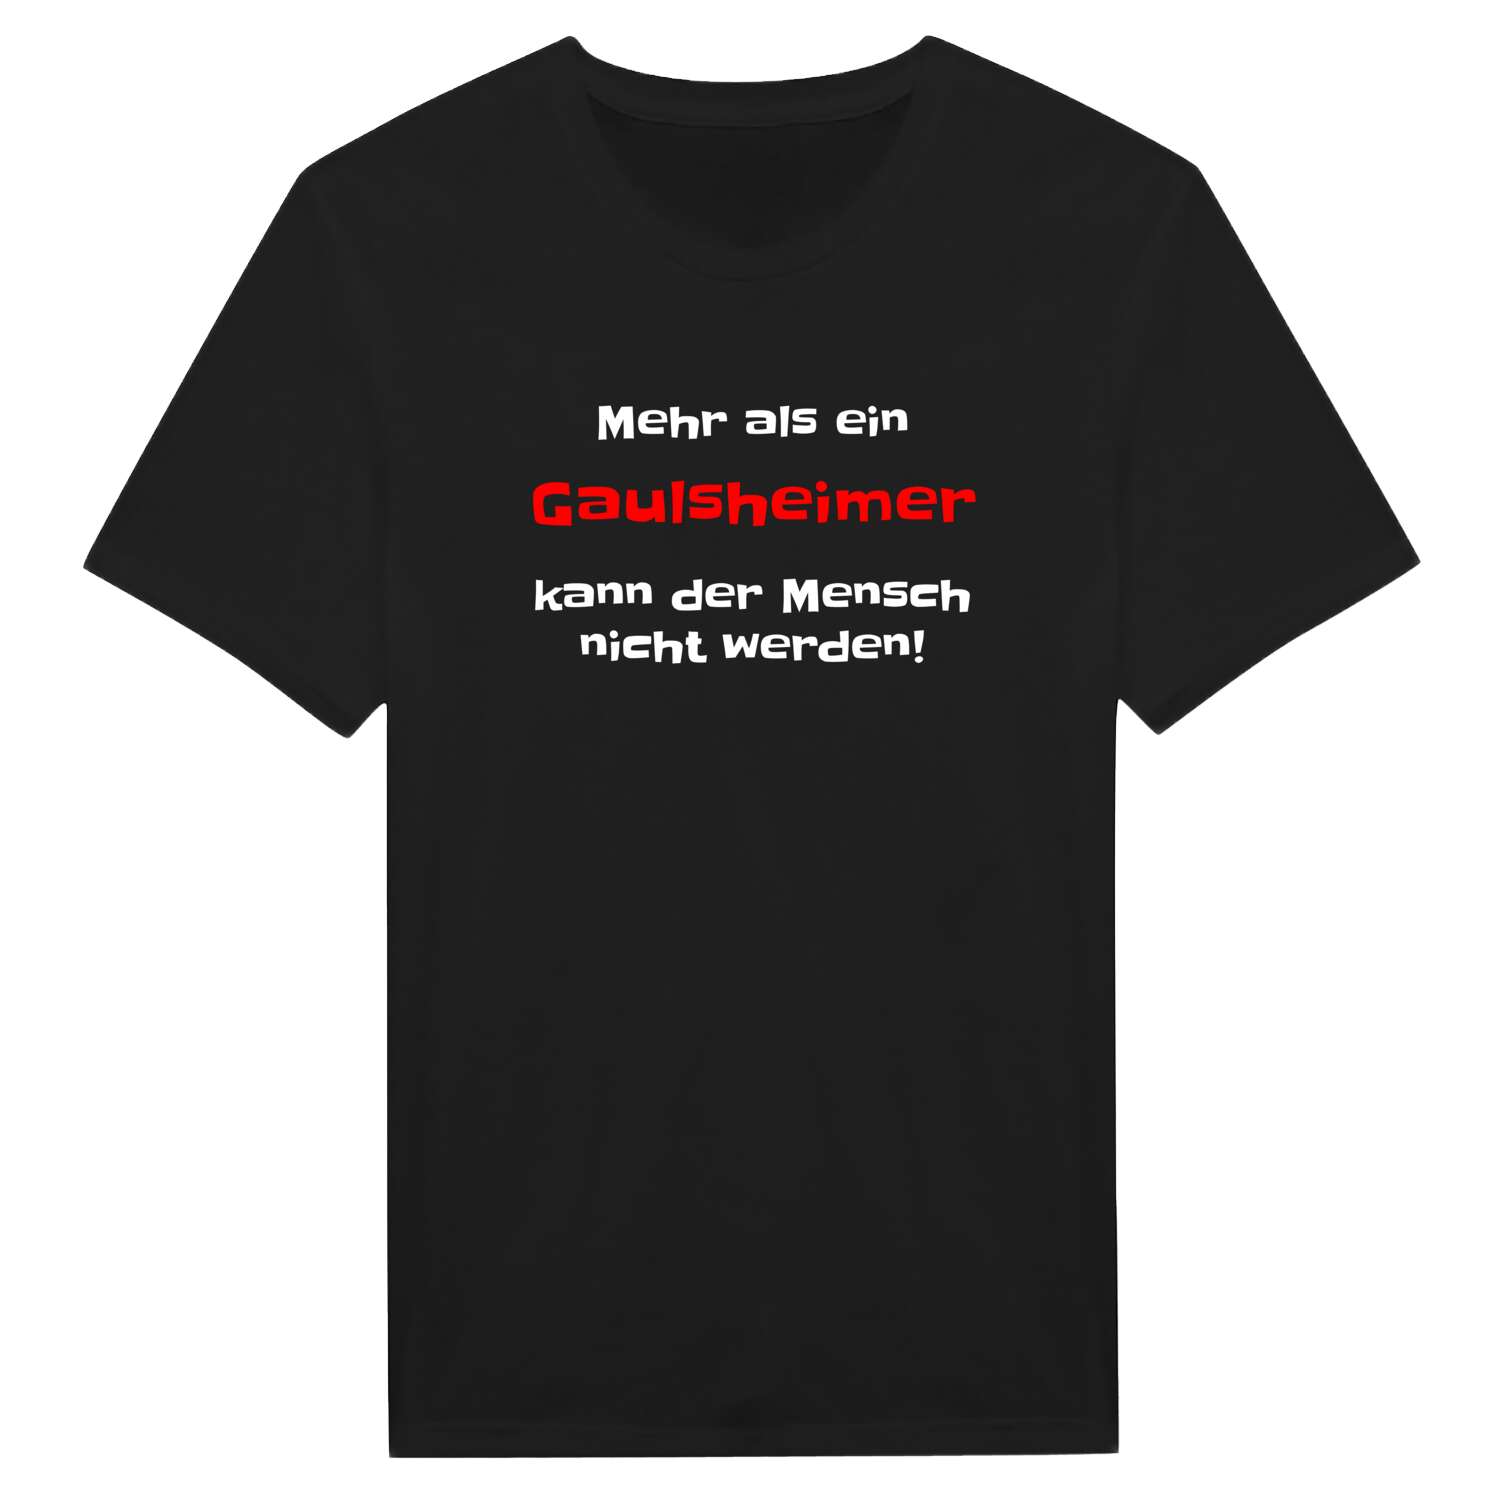 Gaulsheim T-Shirt »Mehr als ein«